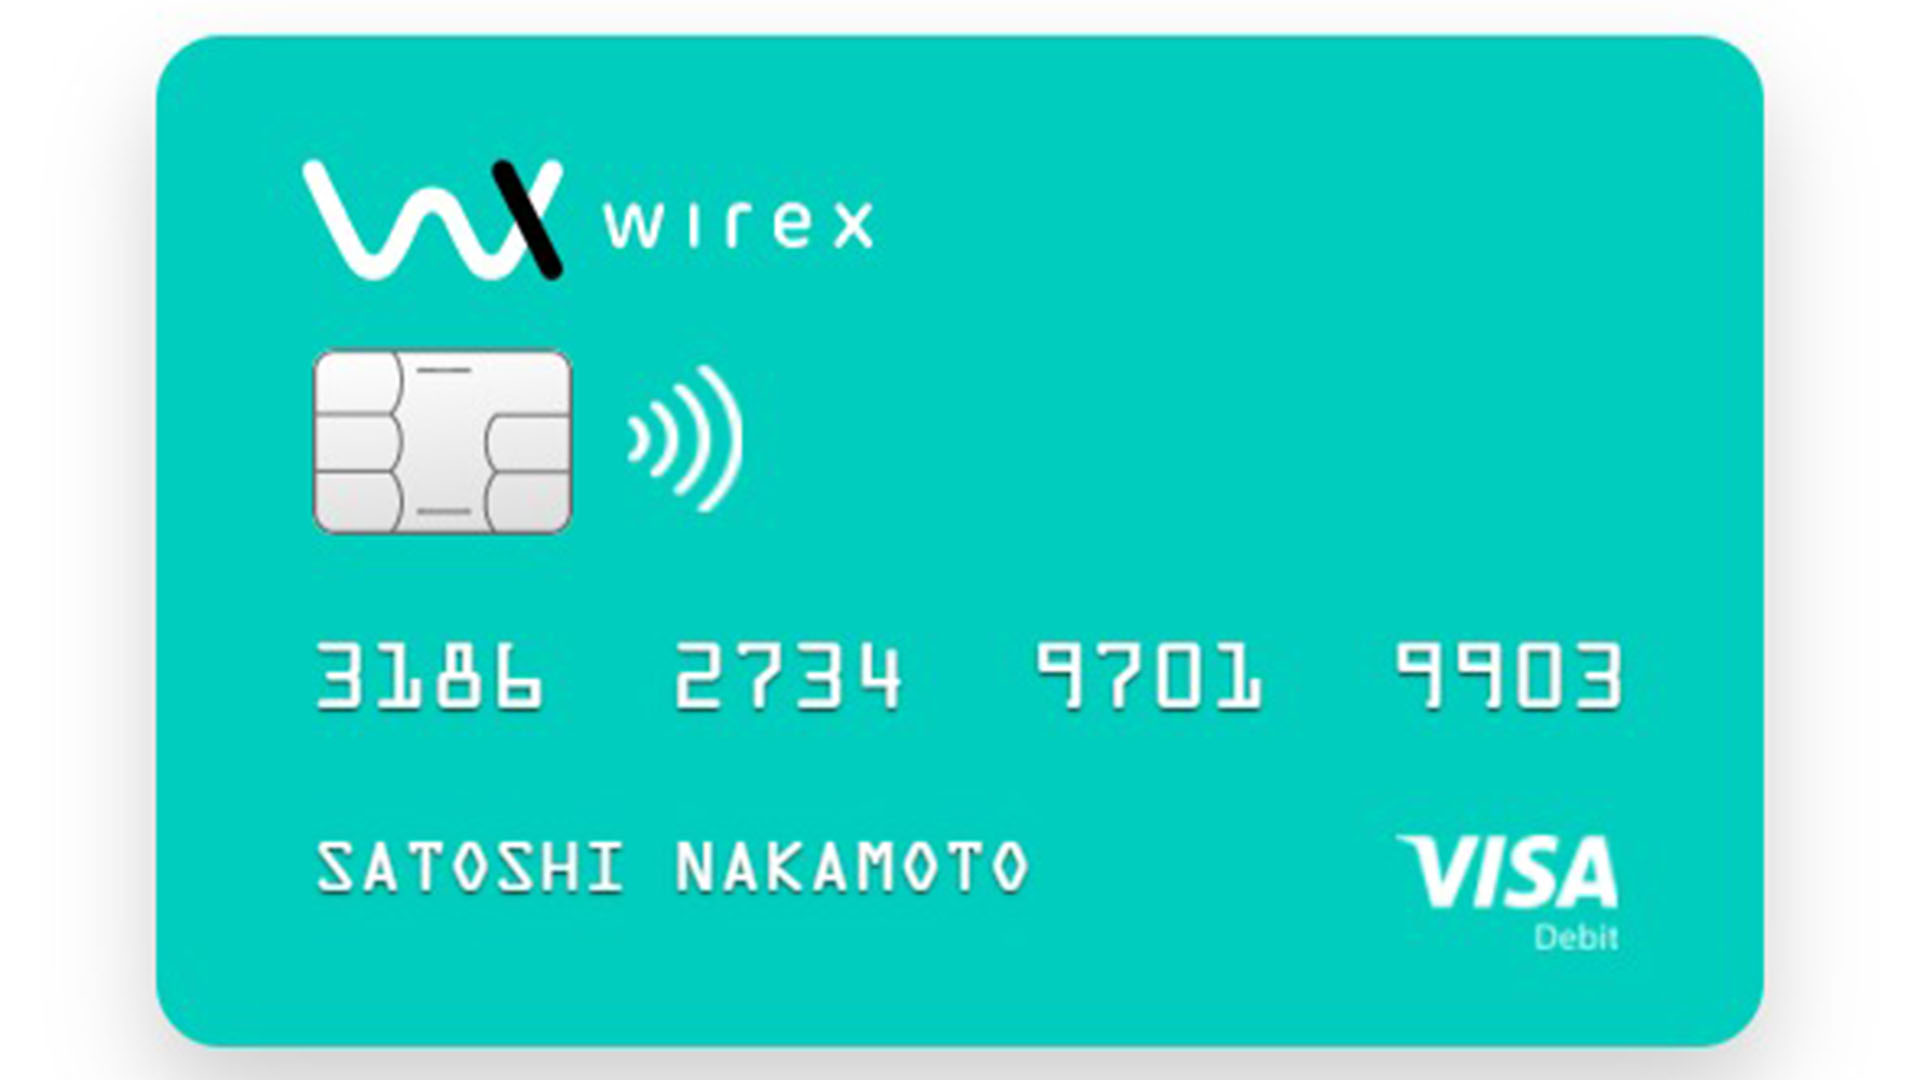 wirex abdde odeme ve kripto hizmeti icin visa ile ortaklik kurdu 2